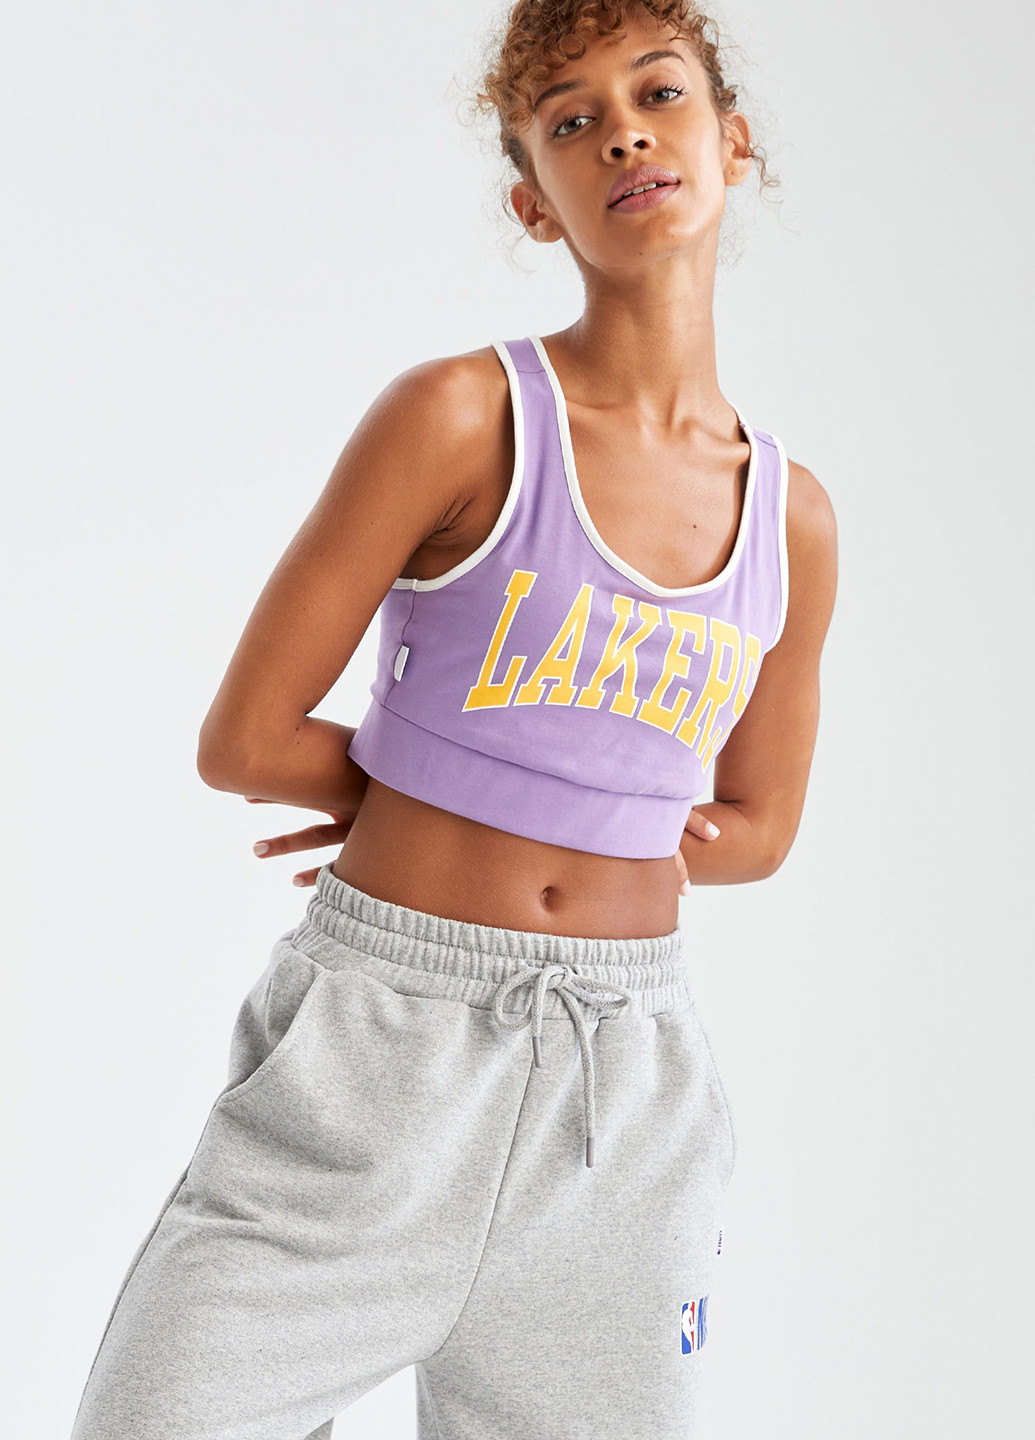 Cпортивный лиф Los Angeles Lakers DeFacto спортивный лиф надпись сиреневый спортивный хлопок, трикотаж